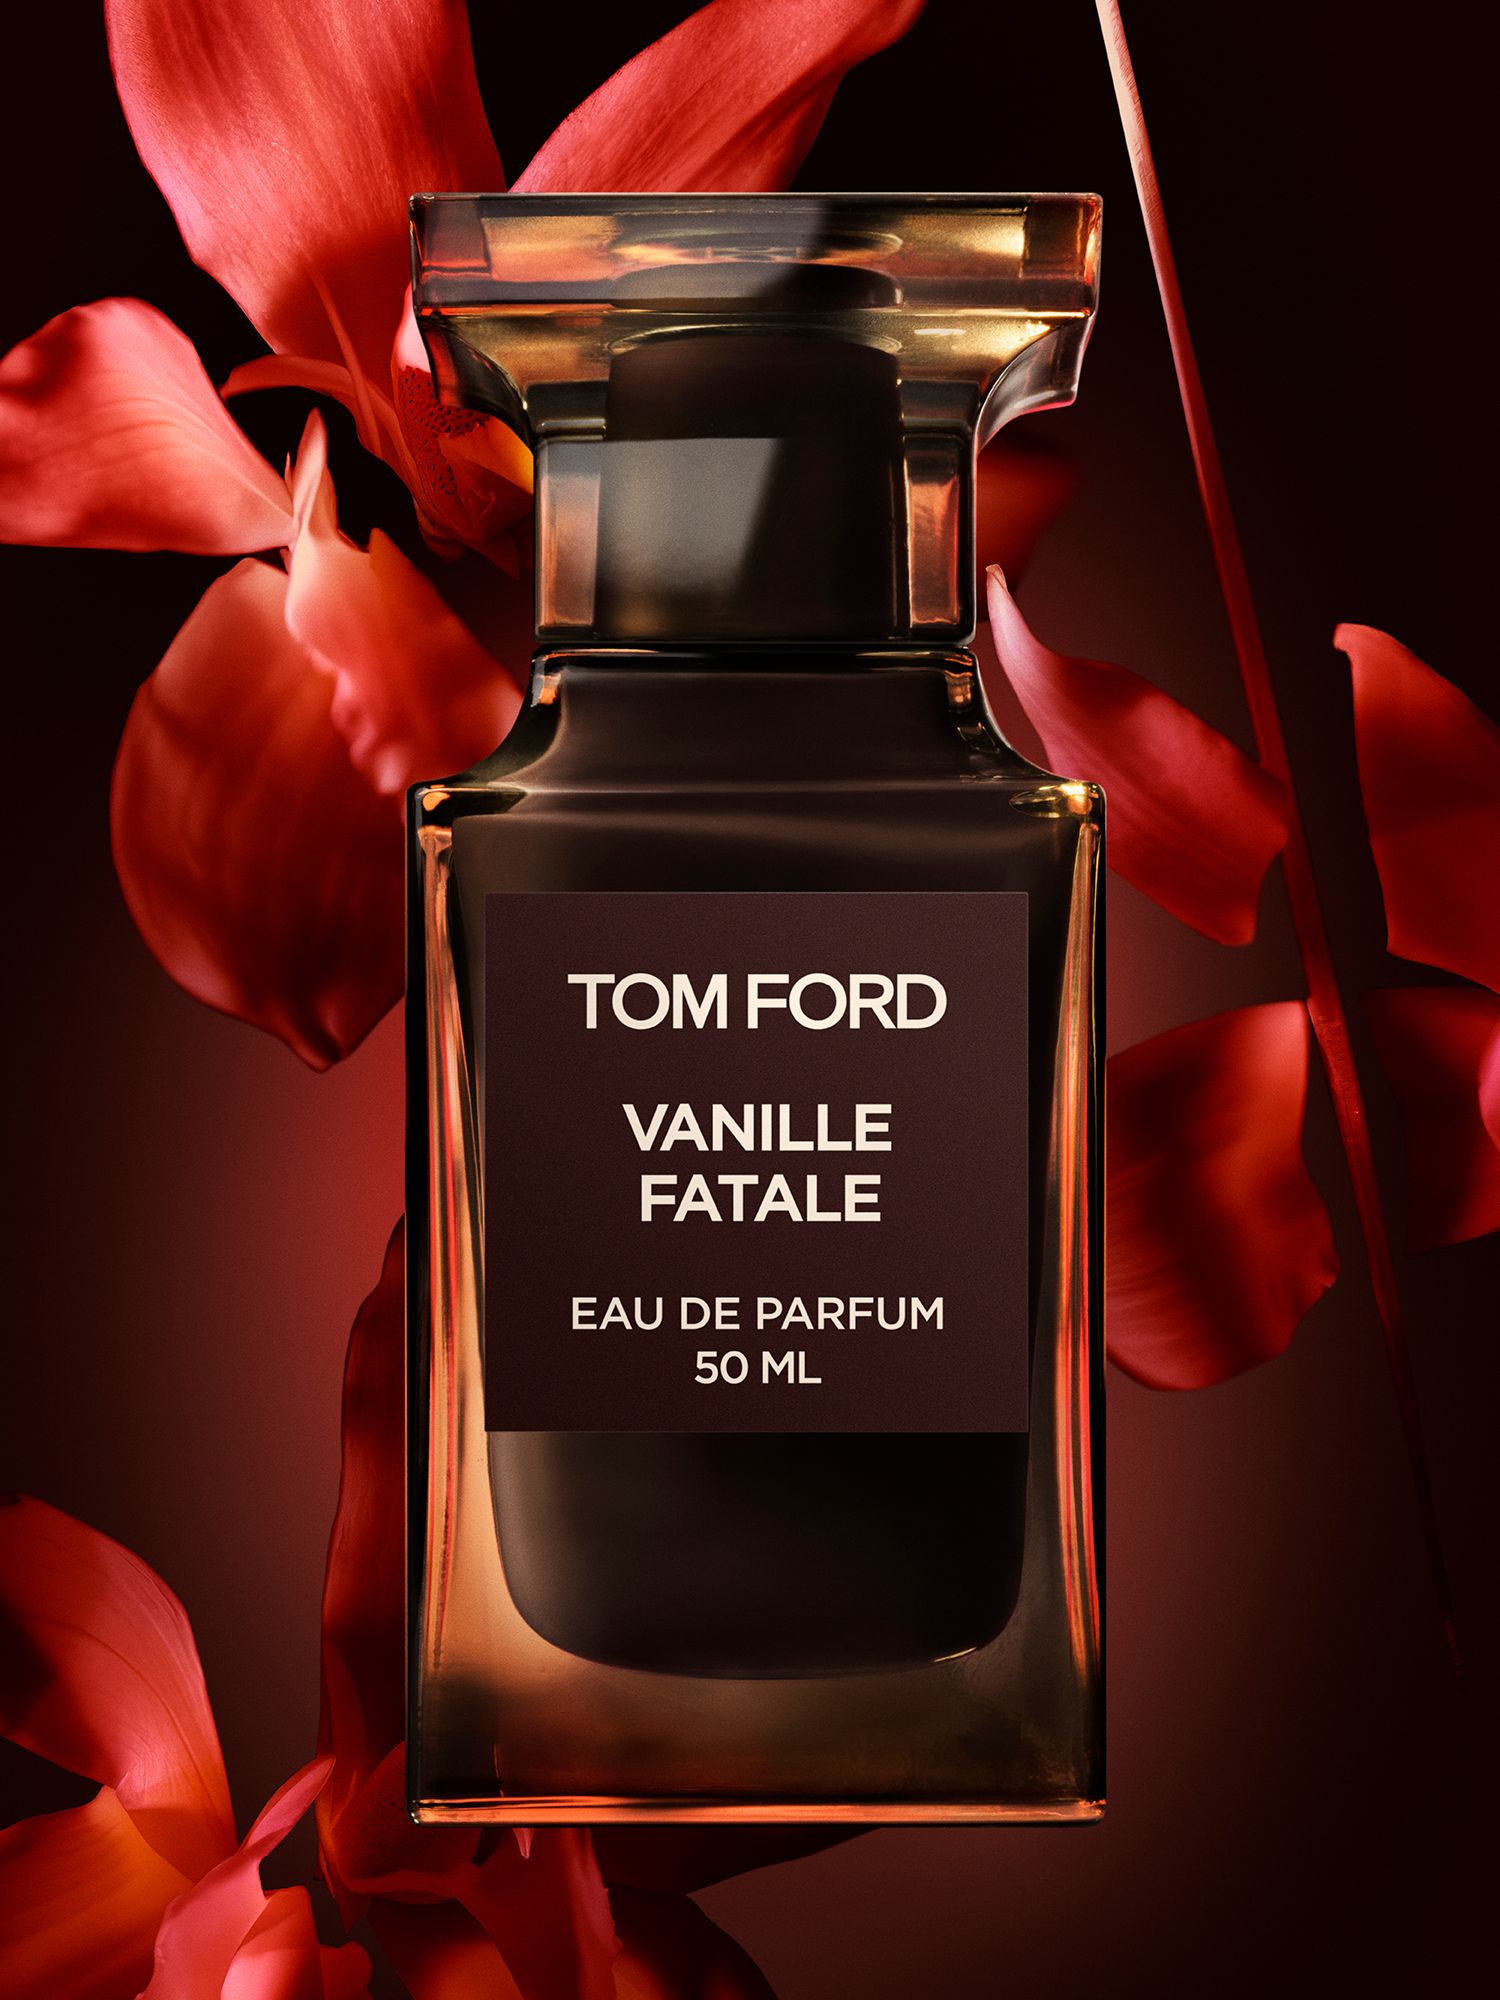 TOM FORD Private Blend Vanille Fatale Eau de Parfum, 50ml